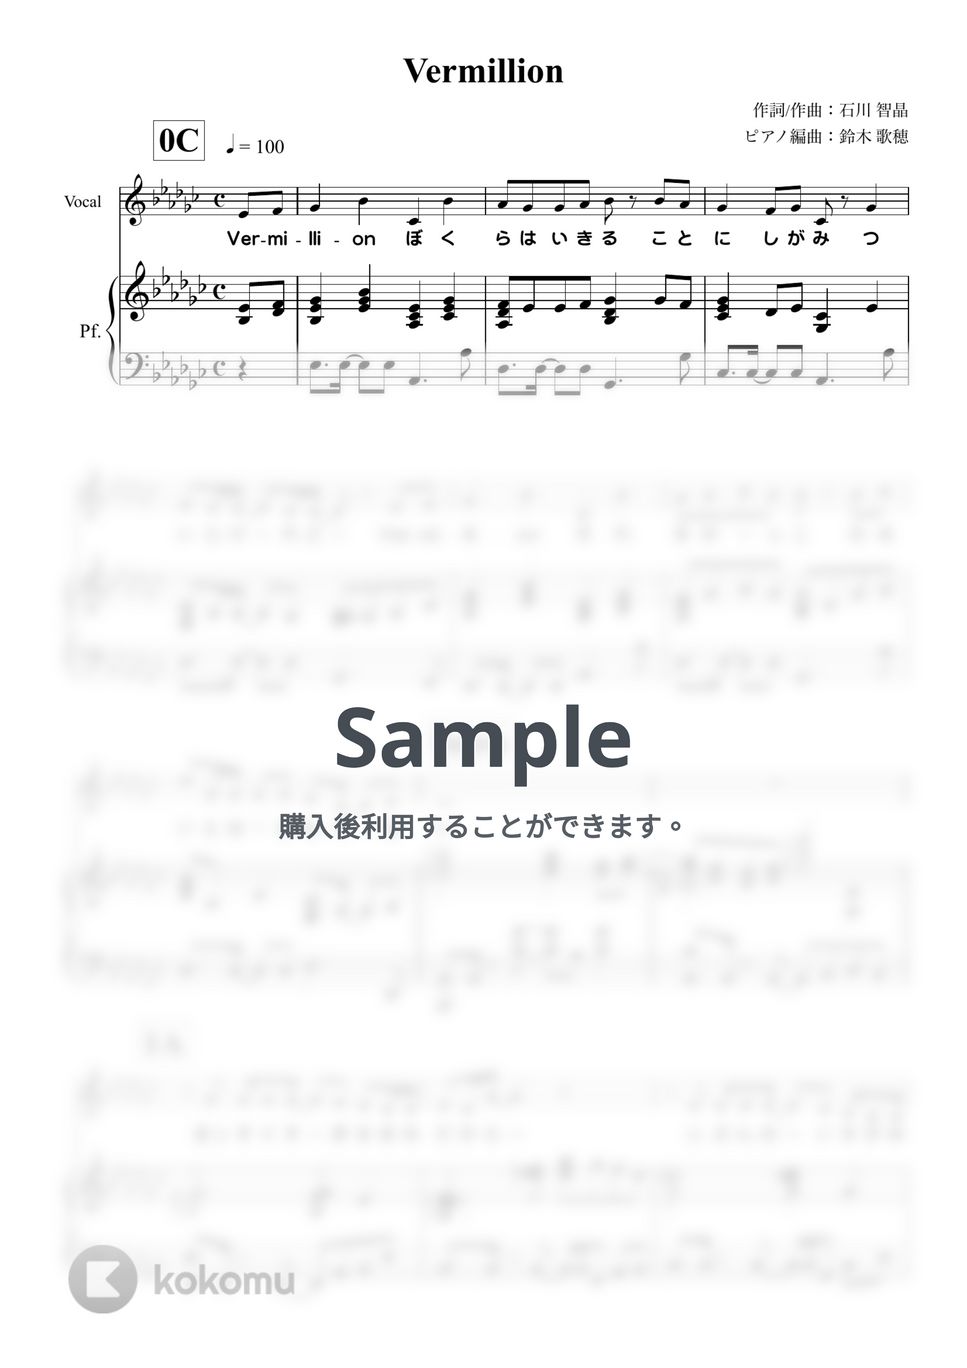 石川智晶 - Vermillion (ピアノ弾き語り/『ぼくらの』) by 鈴木歌穂